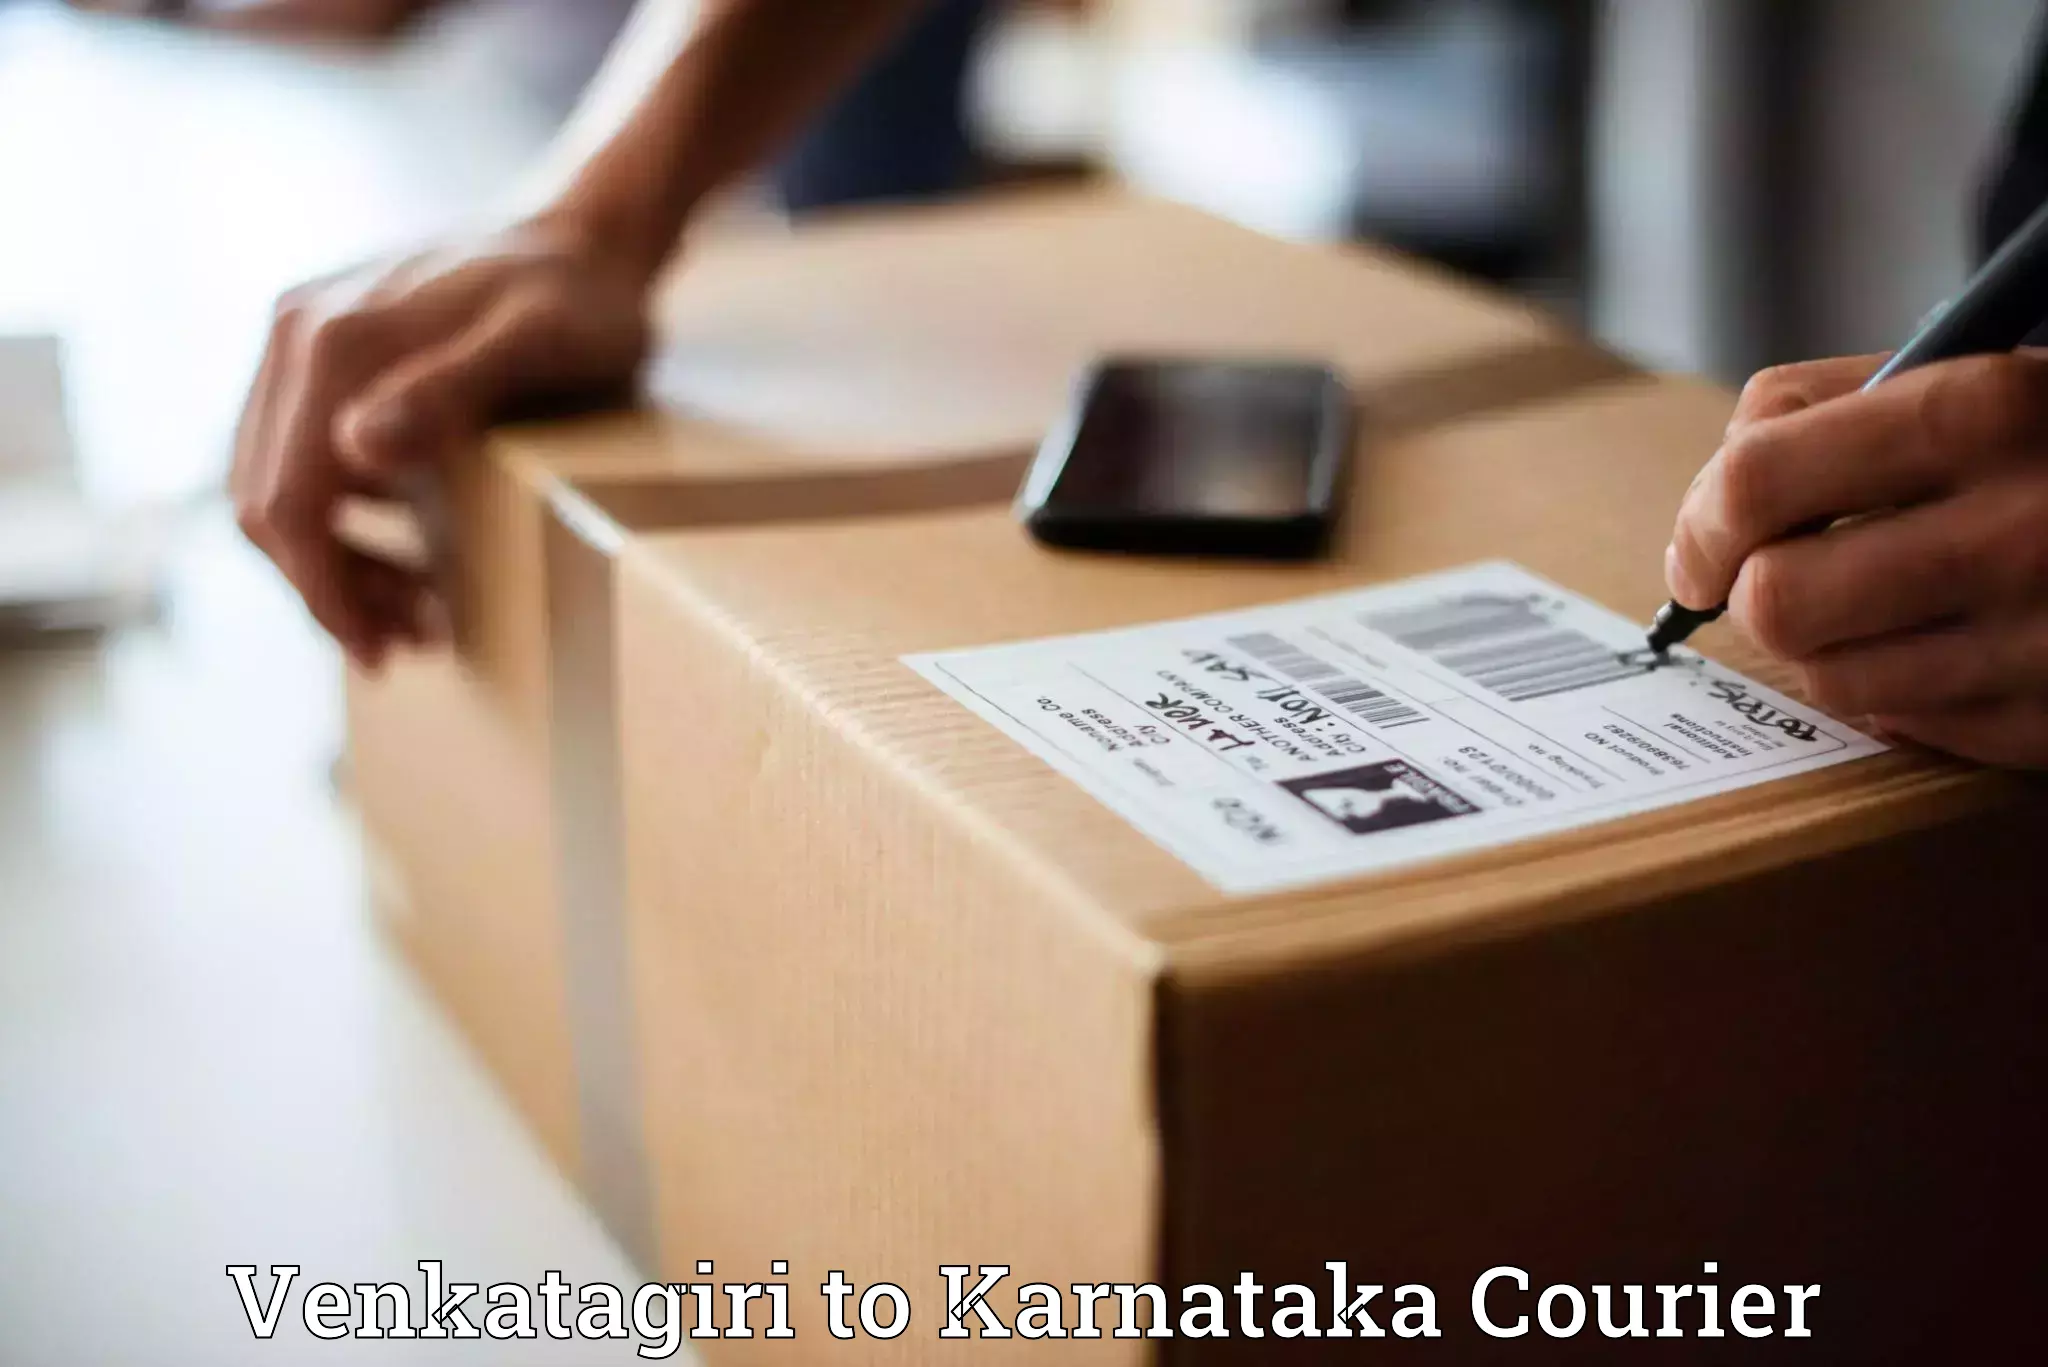 Reliable delivery network Venkatagiri to Anavatti